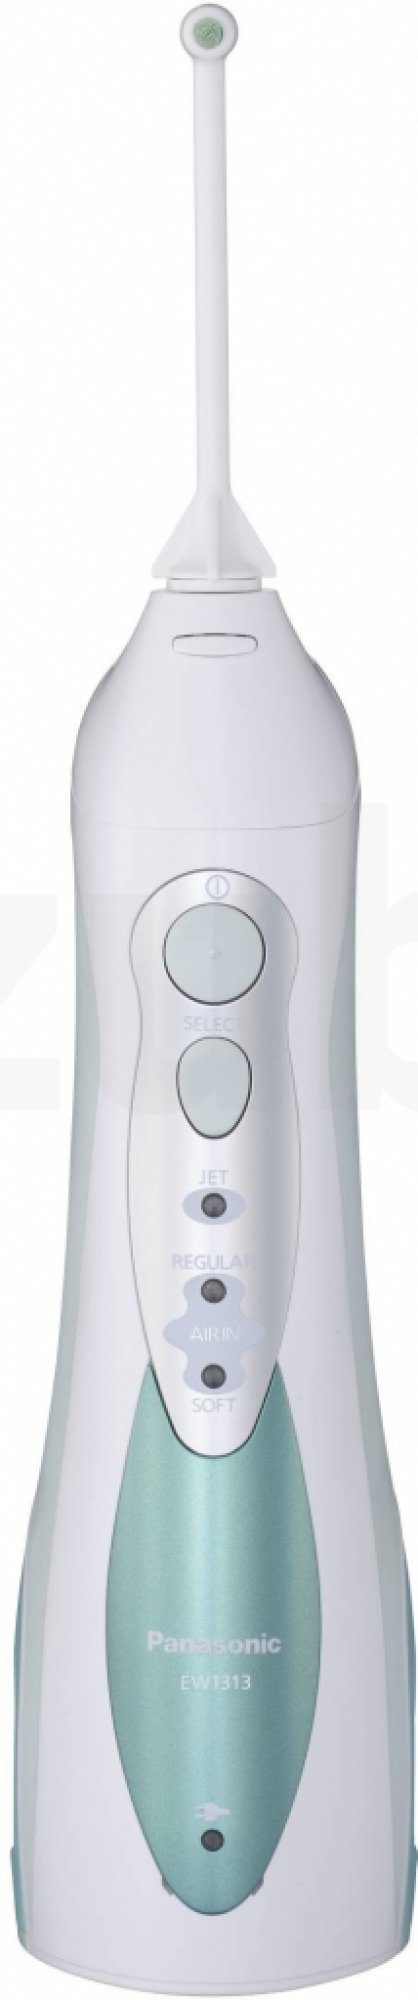 Bezdrátová ústní sprcha Panasonic EW1313 / 3 rychlosti / bílá/zelená / ROZBALENO